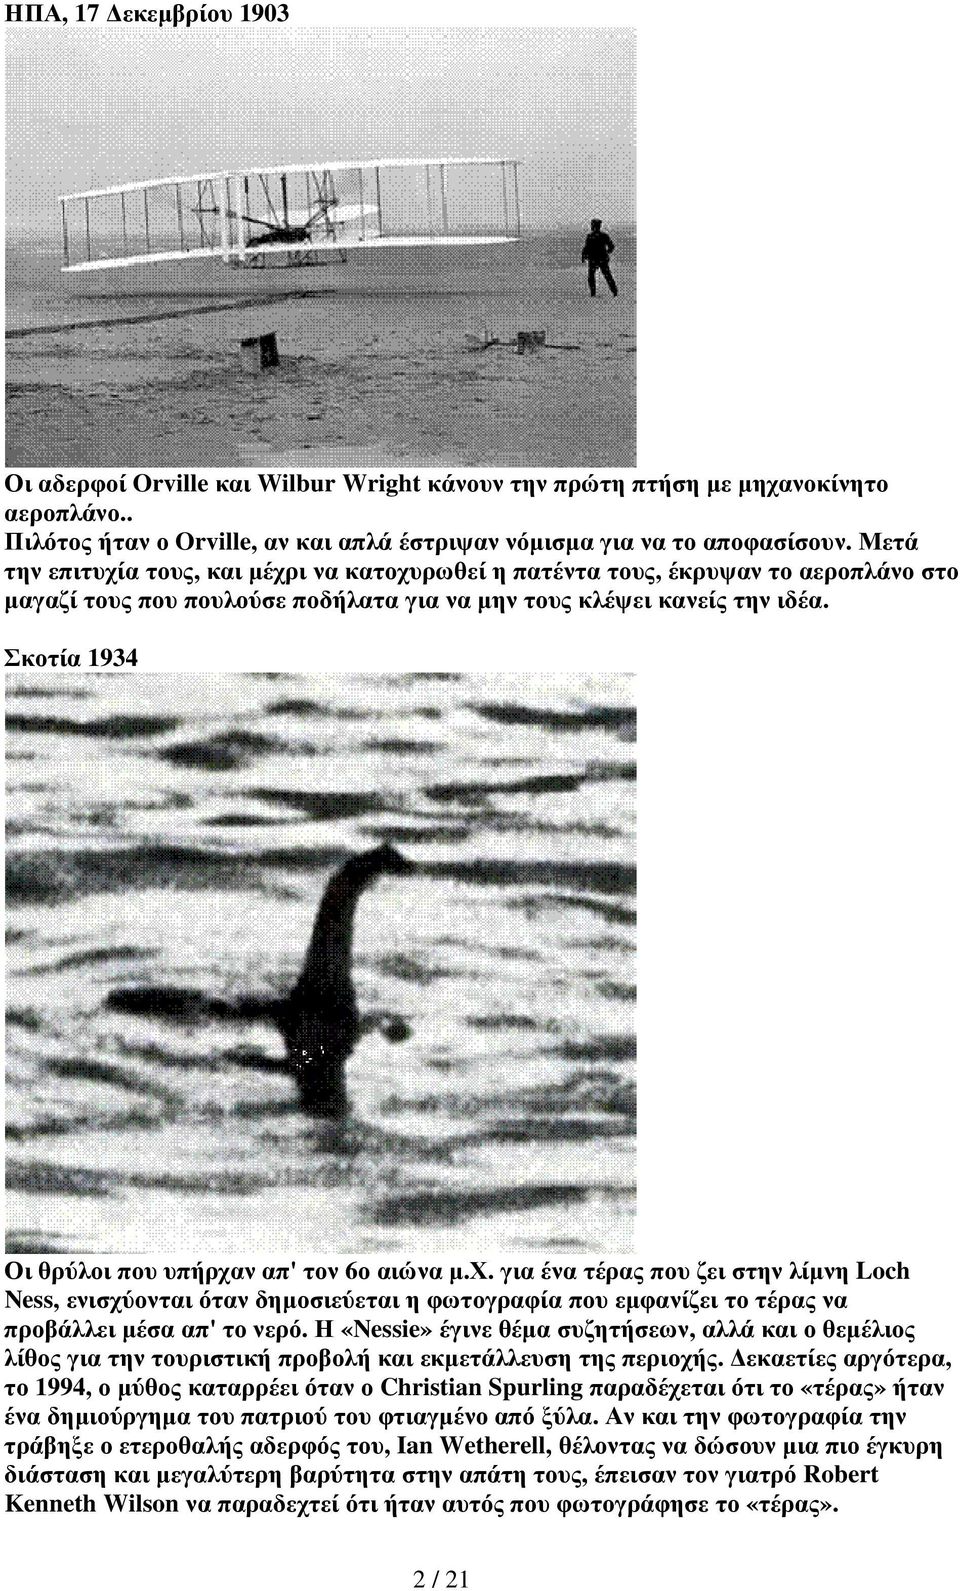 Σκοτία 1934 Οι θρύλοι που υπήρχαν απ' τον 6ο αιώνα µ.χ. για ένα τέρας που ζει στην λίµνη Loch Ness, ενισχύονται όταν δηµοσιεύεται η φωτογραφία που εµφανίζει το τέρας να προβάλλει µέσα απ' το νερό.